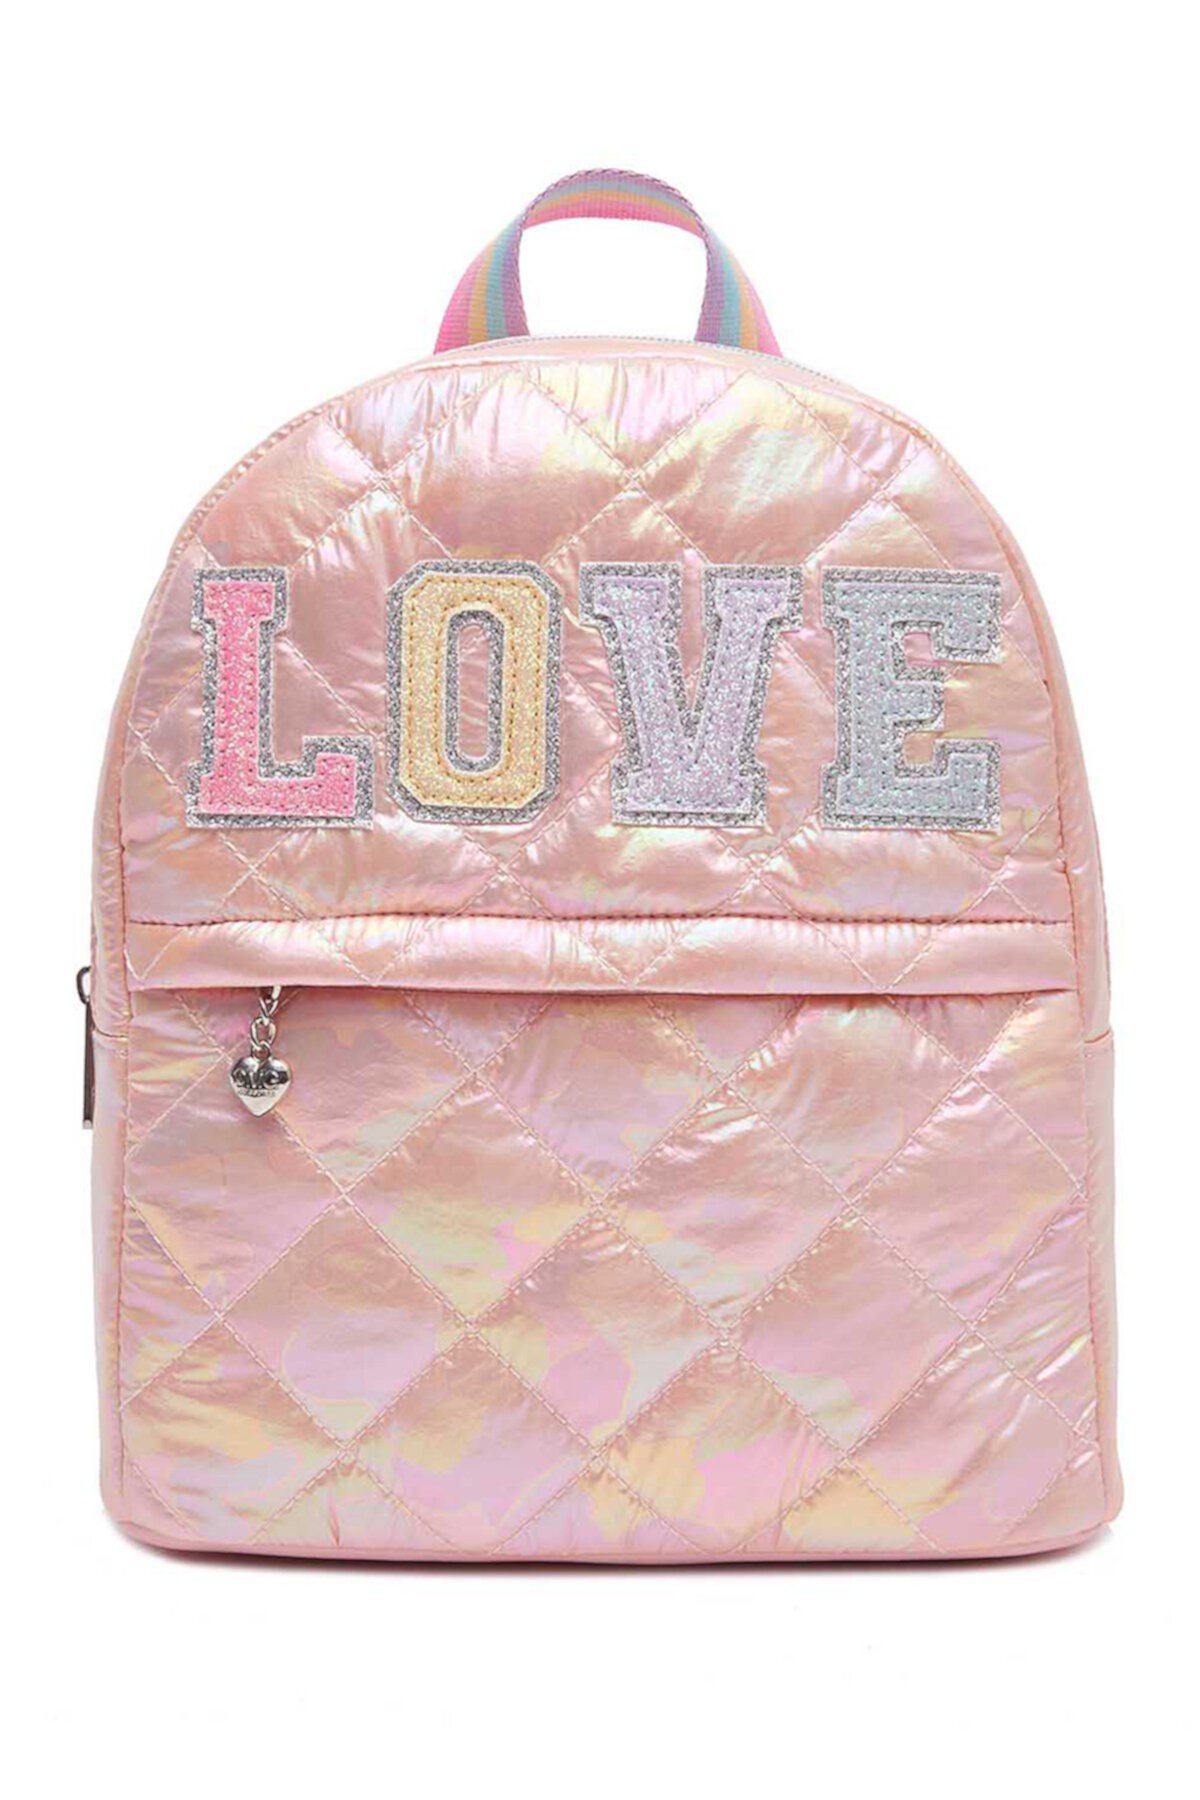 Мини-рюкзак Love Puffer (для больших девочек) OMG! Accessories